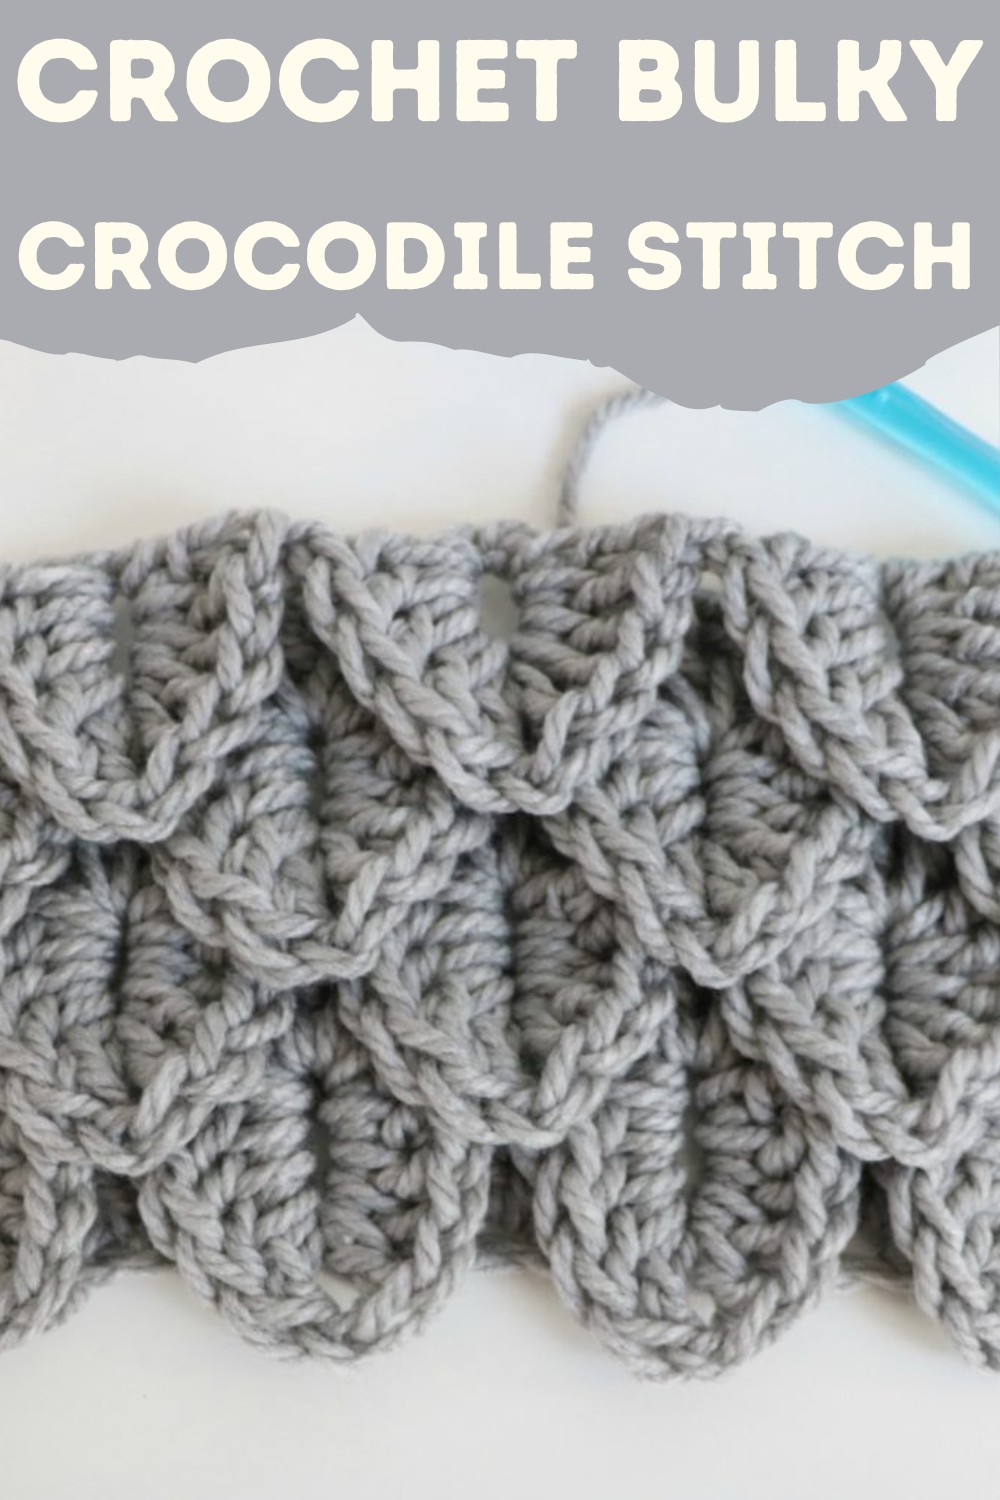  Crochet Bulky Crocodile Stitch Pattern